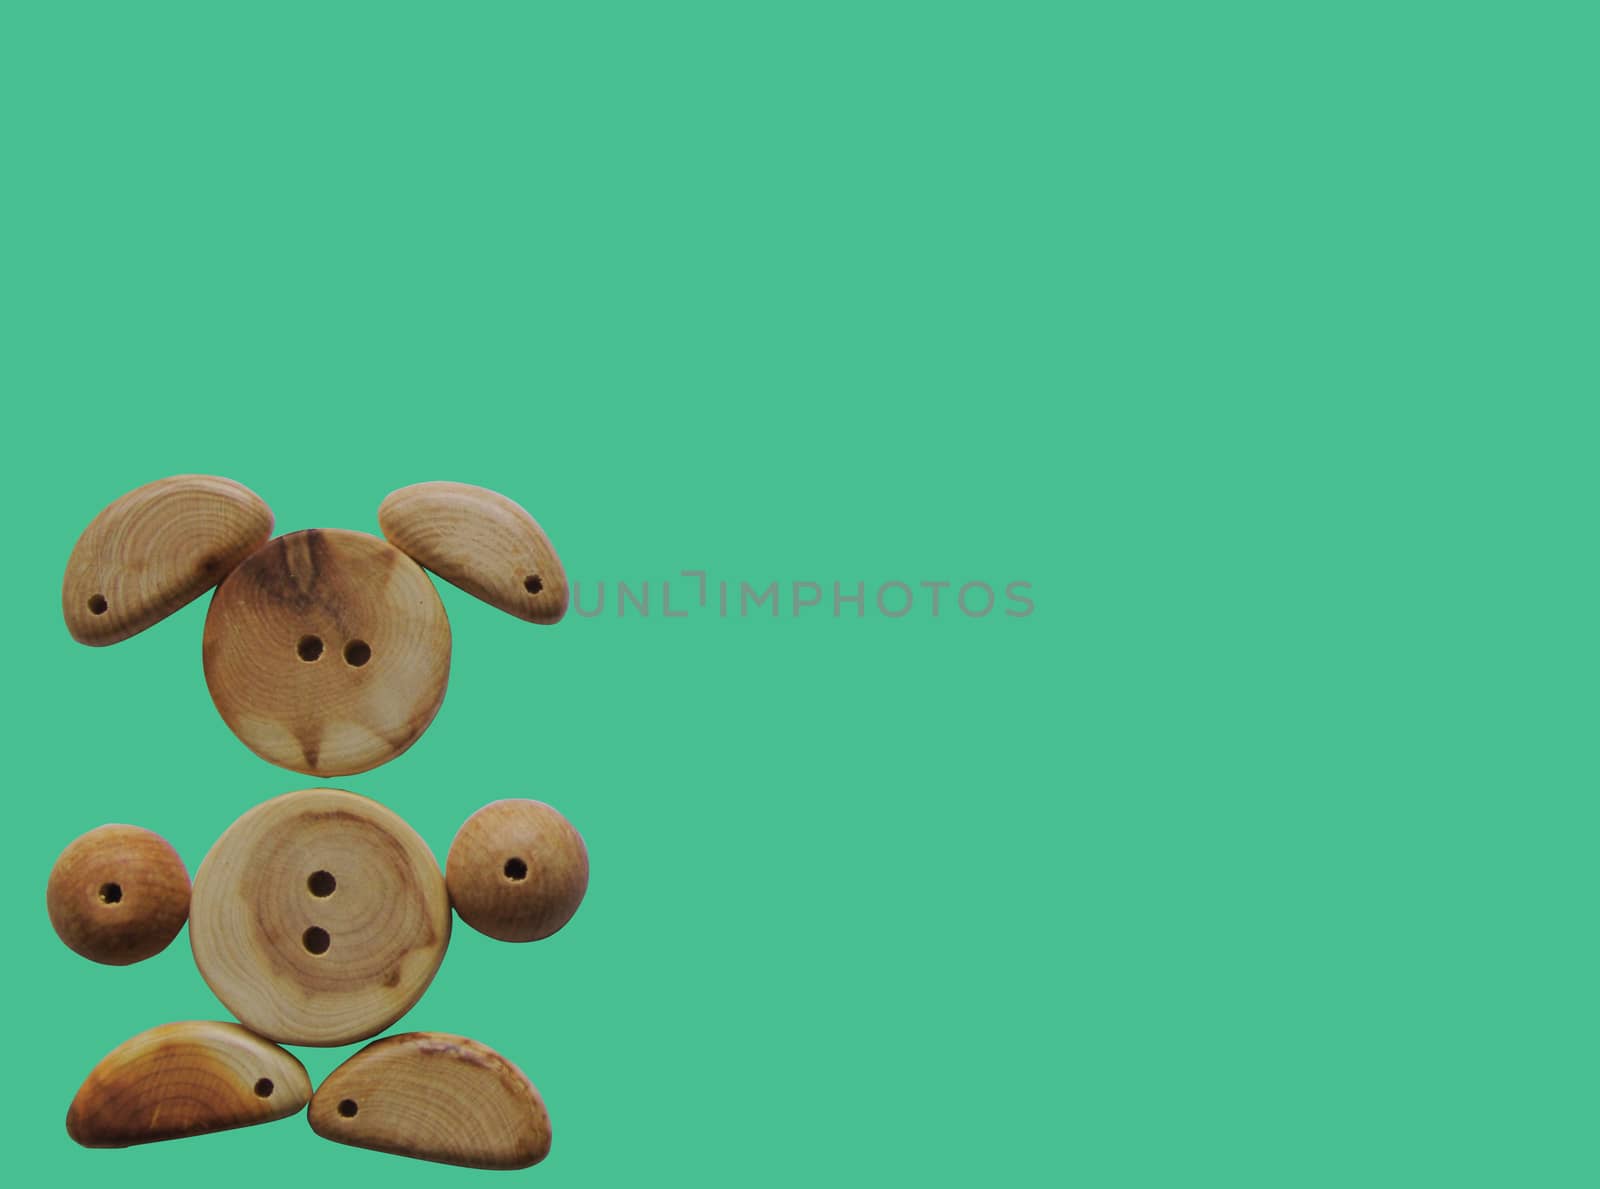 Handicraft goods,  wooden beads. Bunny. Background